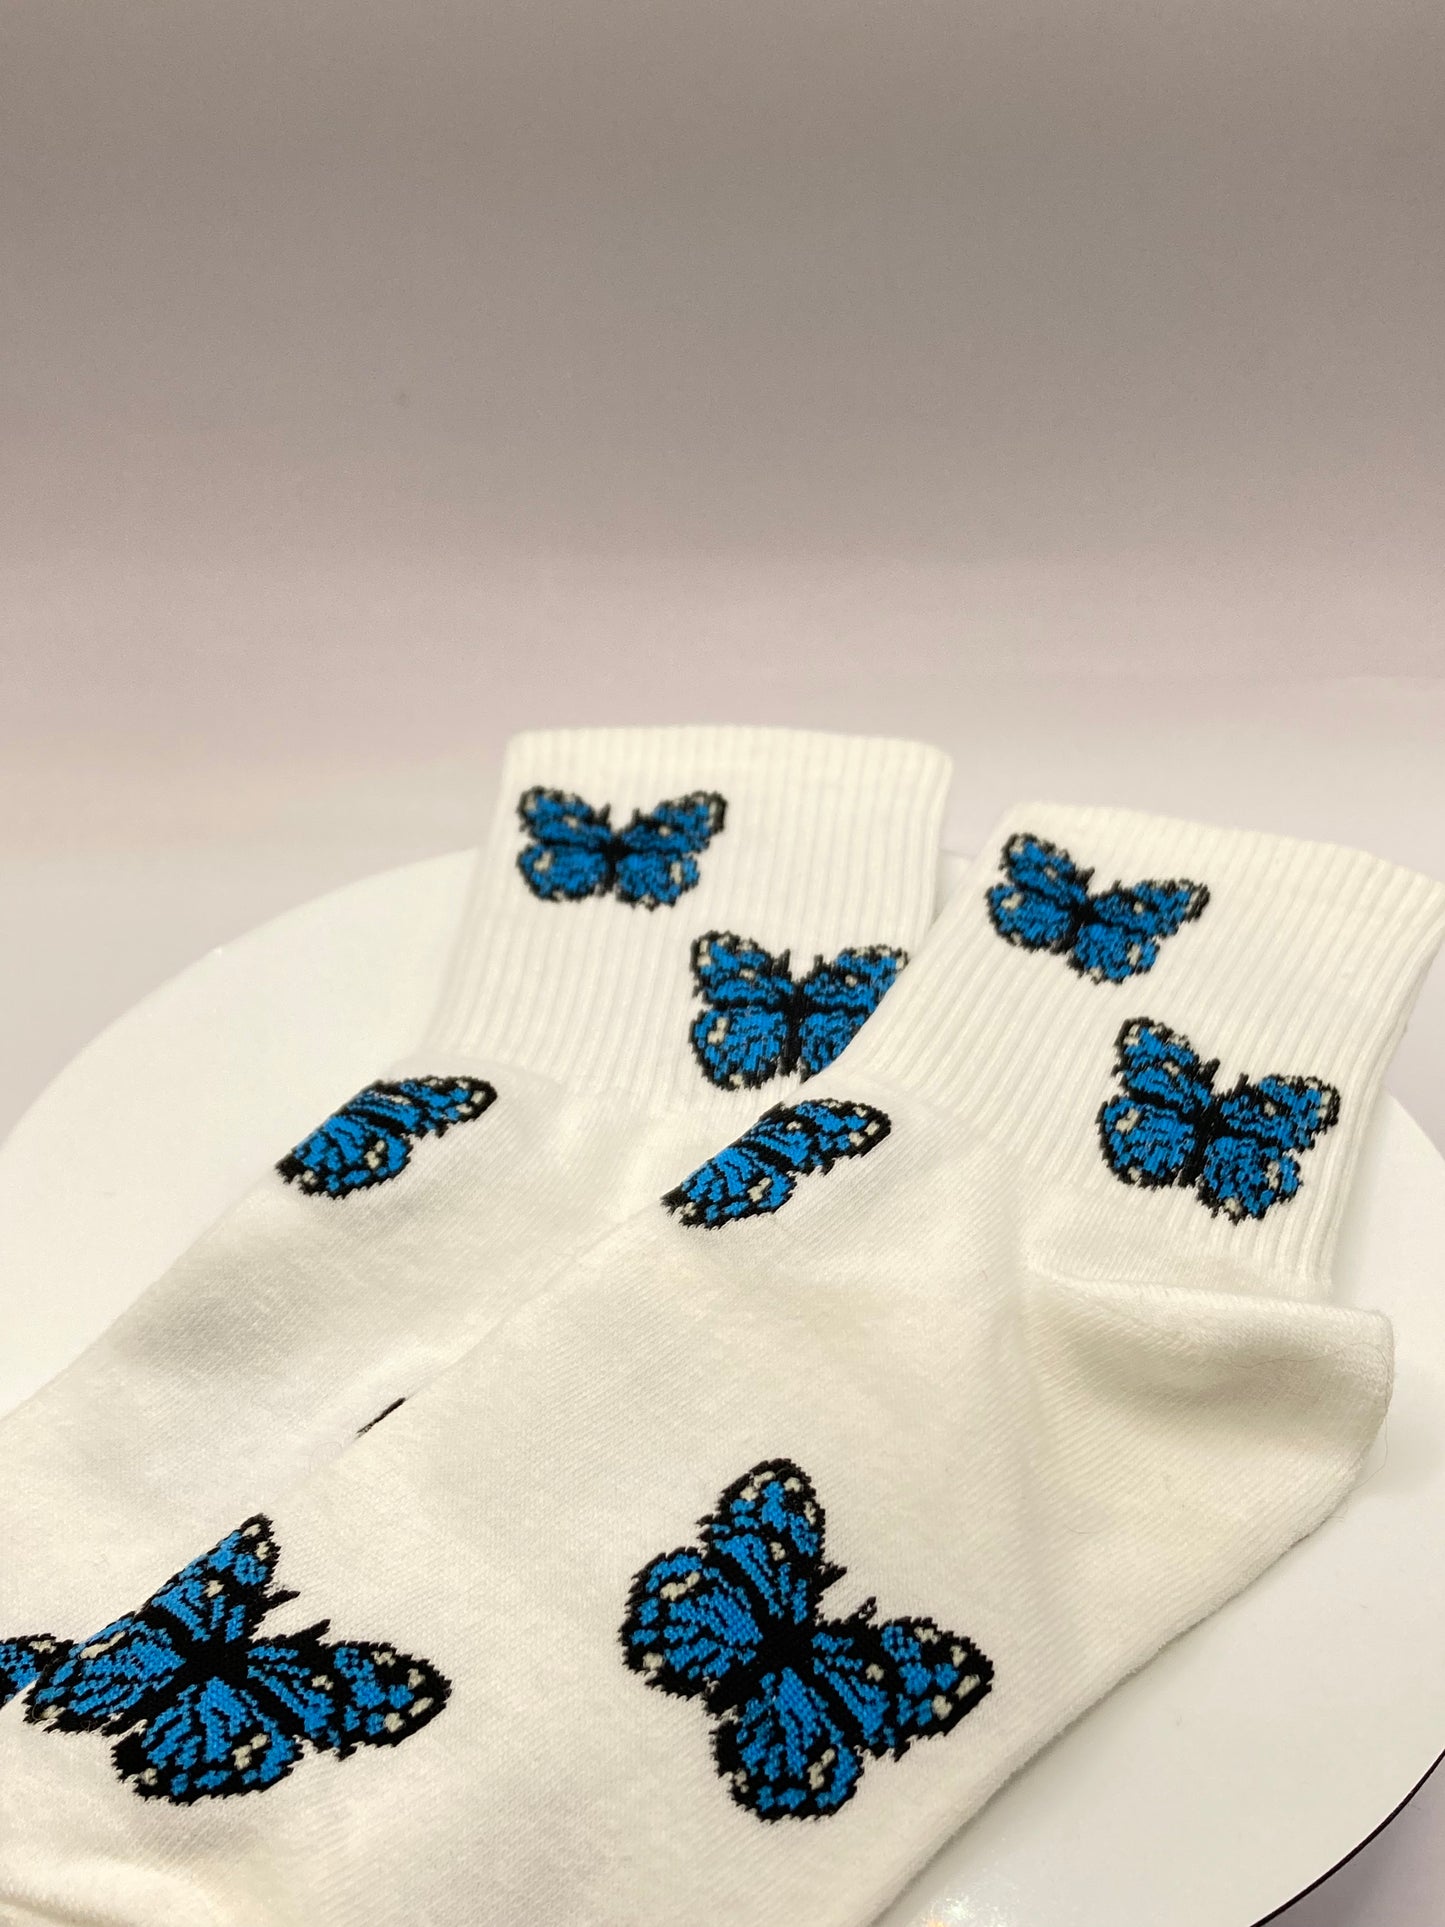 Butterfly Women's Socks